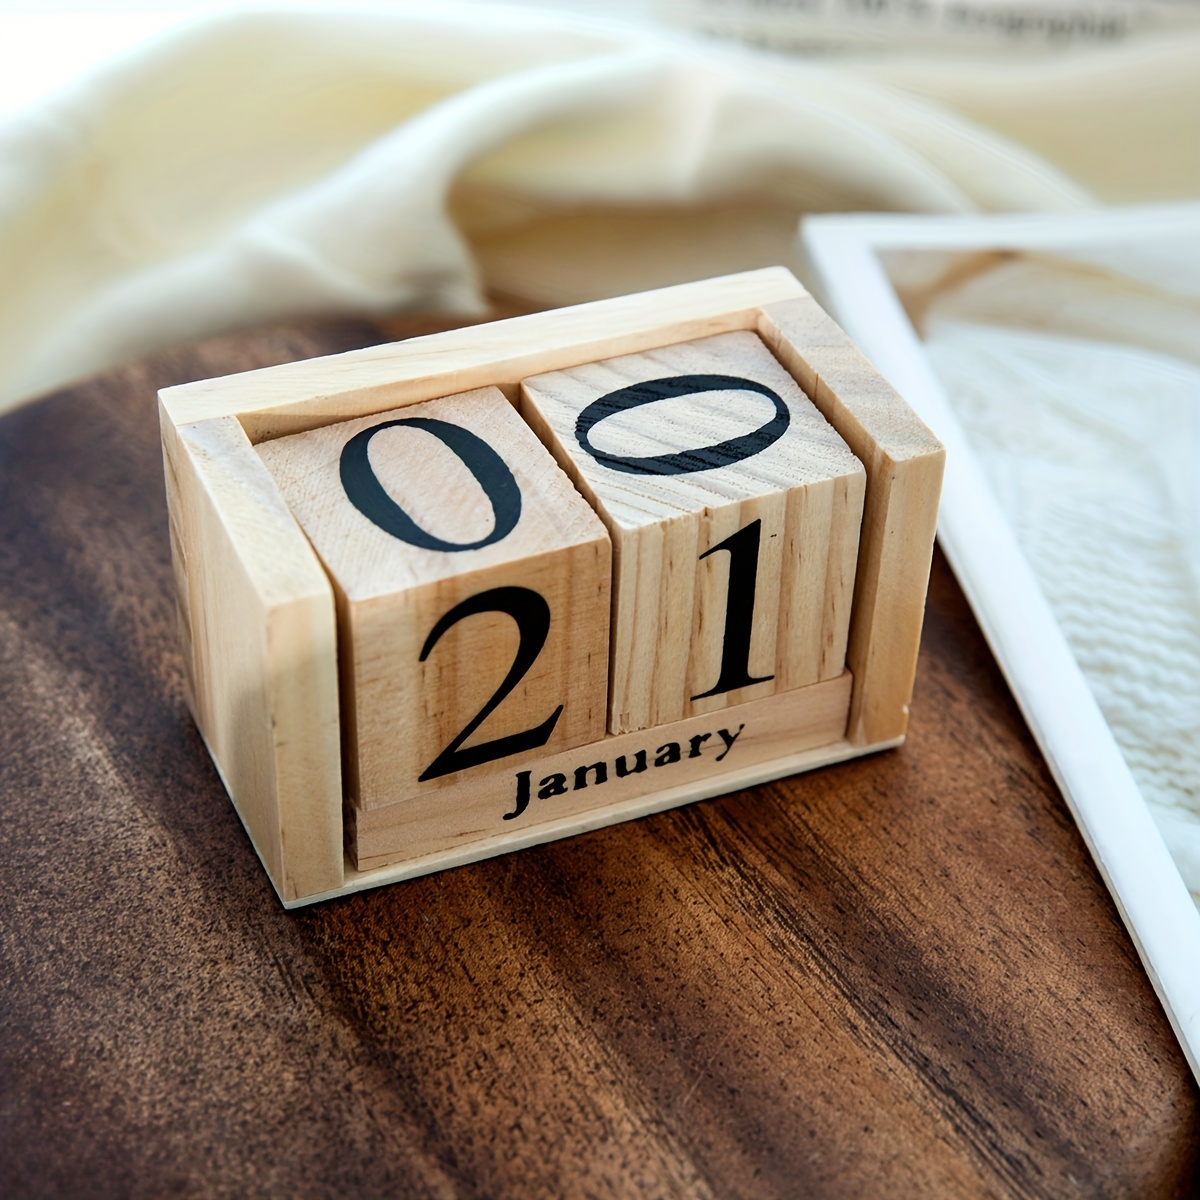 Calendrier de bureau en bois acrylique contemporain calendrier perpétuel  mois d